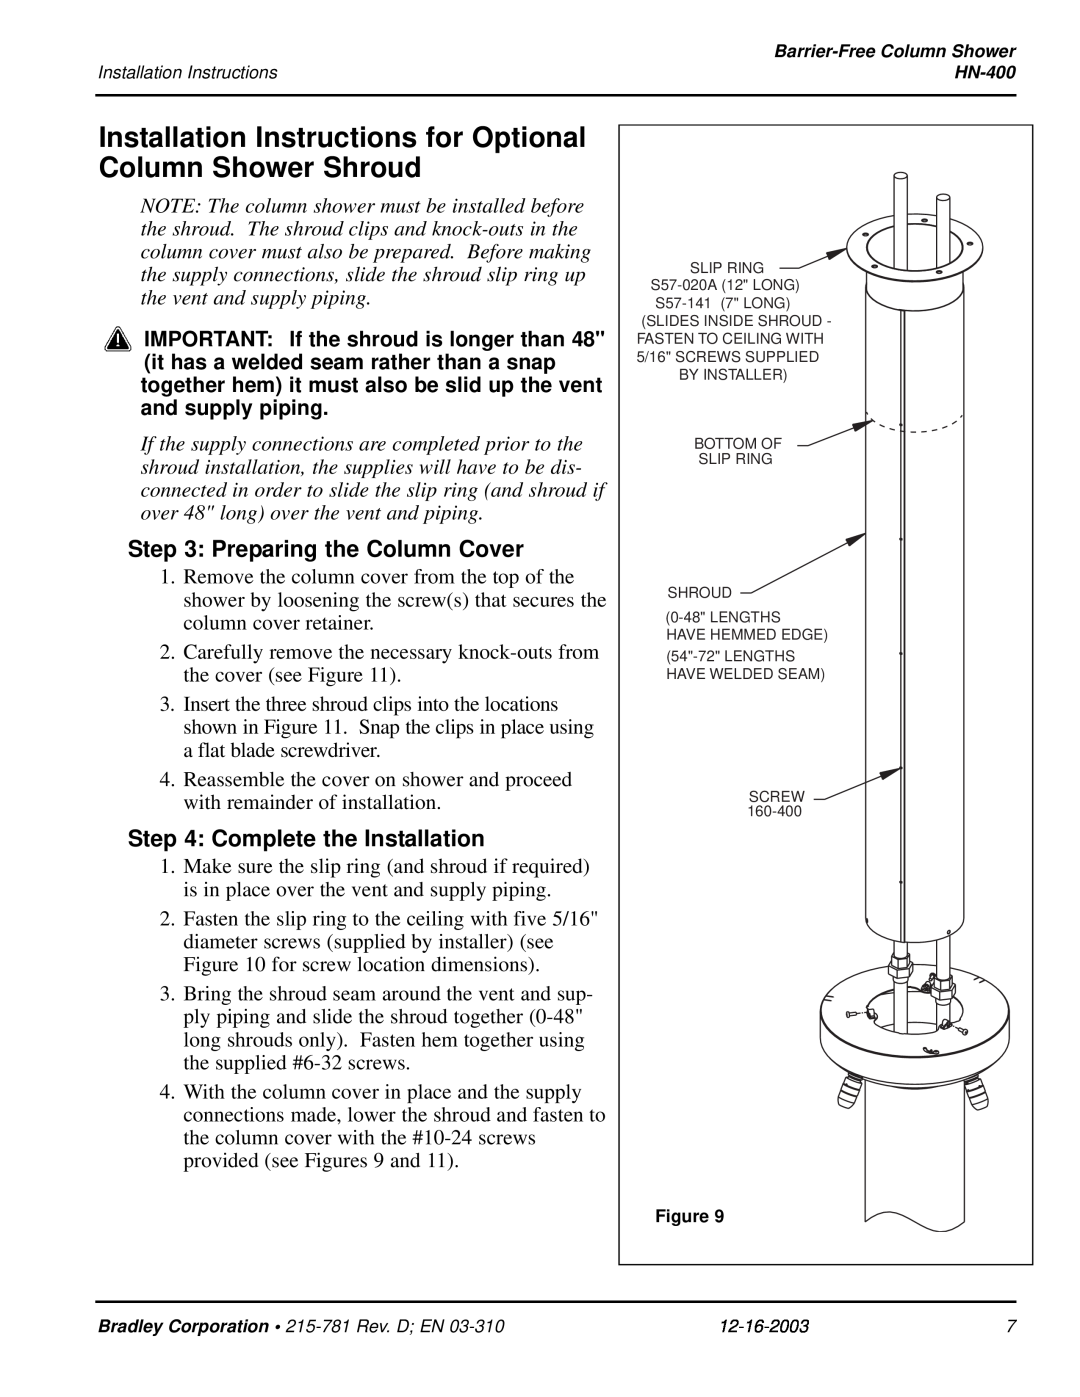 Bradley Smoker HN-400 Installation Instructions for Optional, Column Shower Shroud, Preparing the Column Cover 